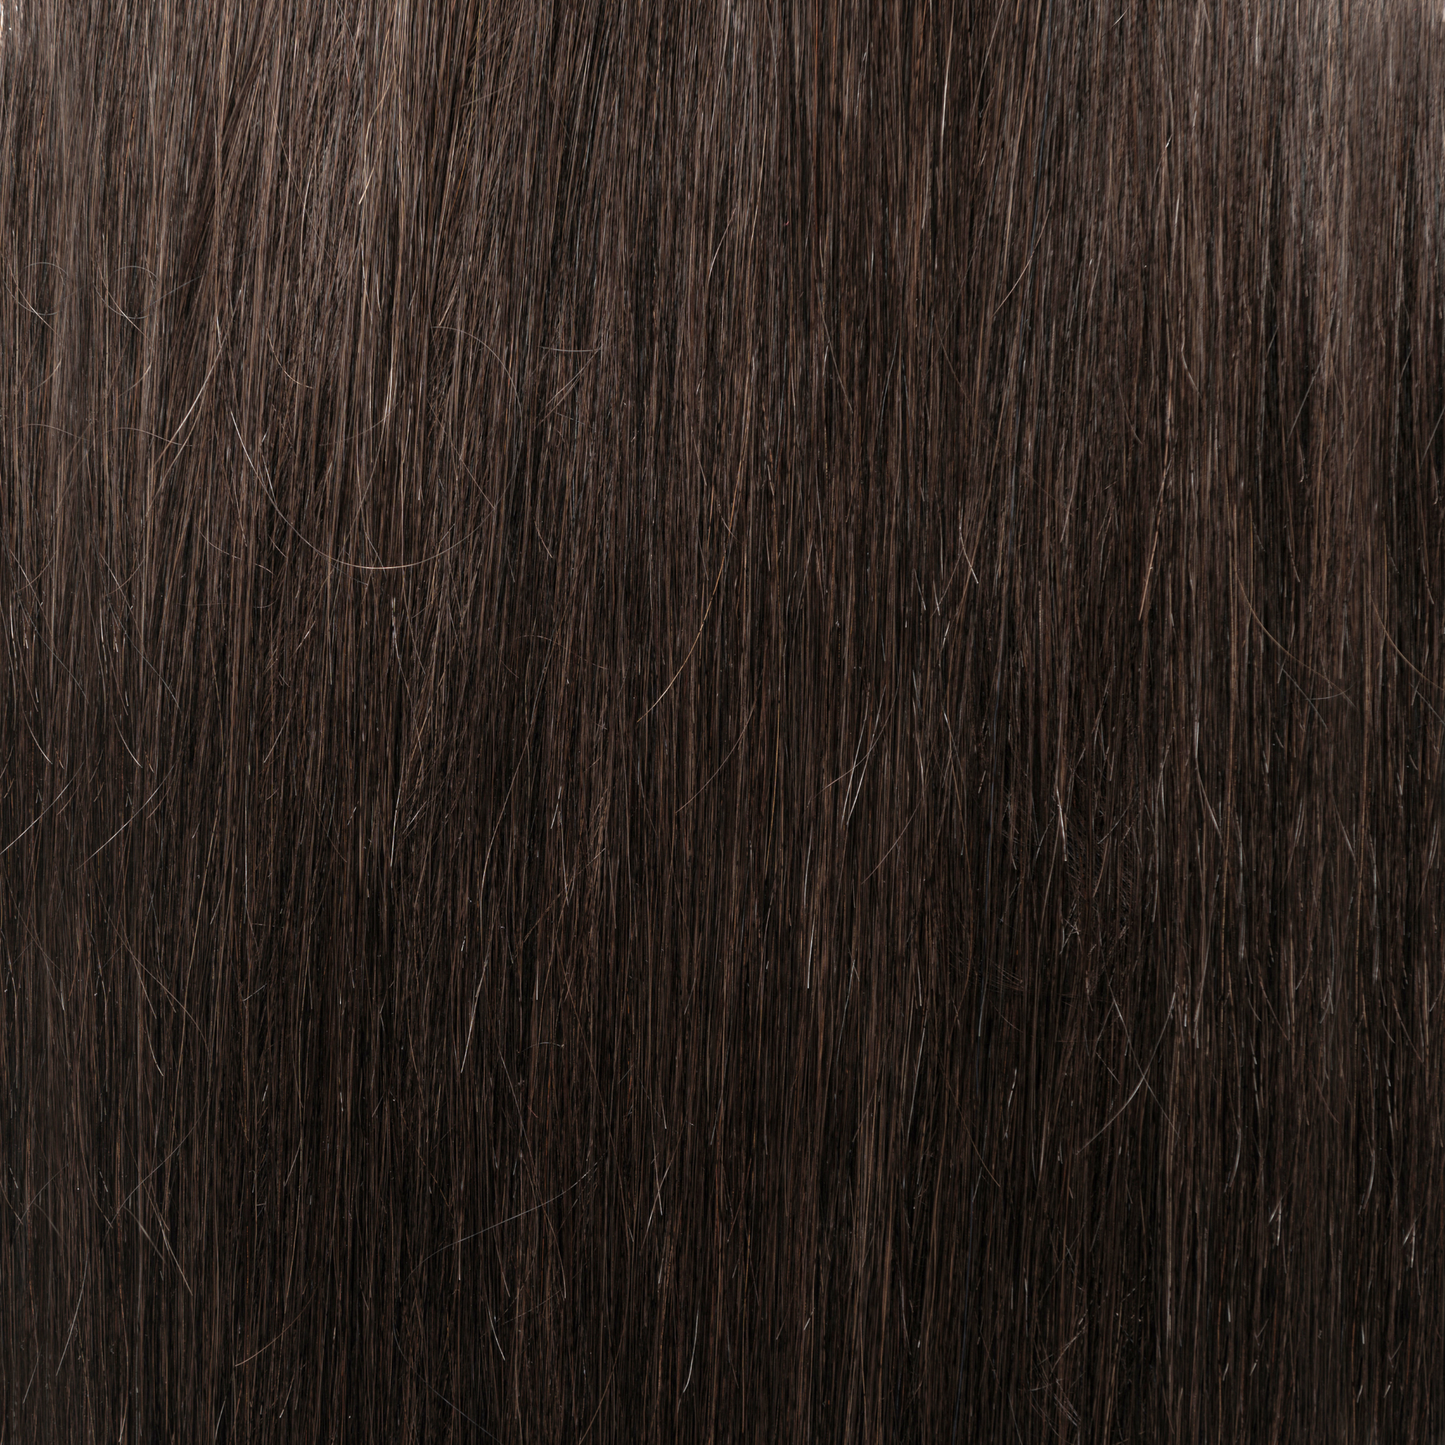 20" Clip-In Dark Brown Hair Extensions